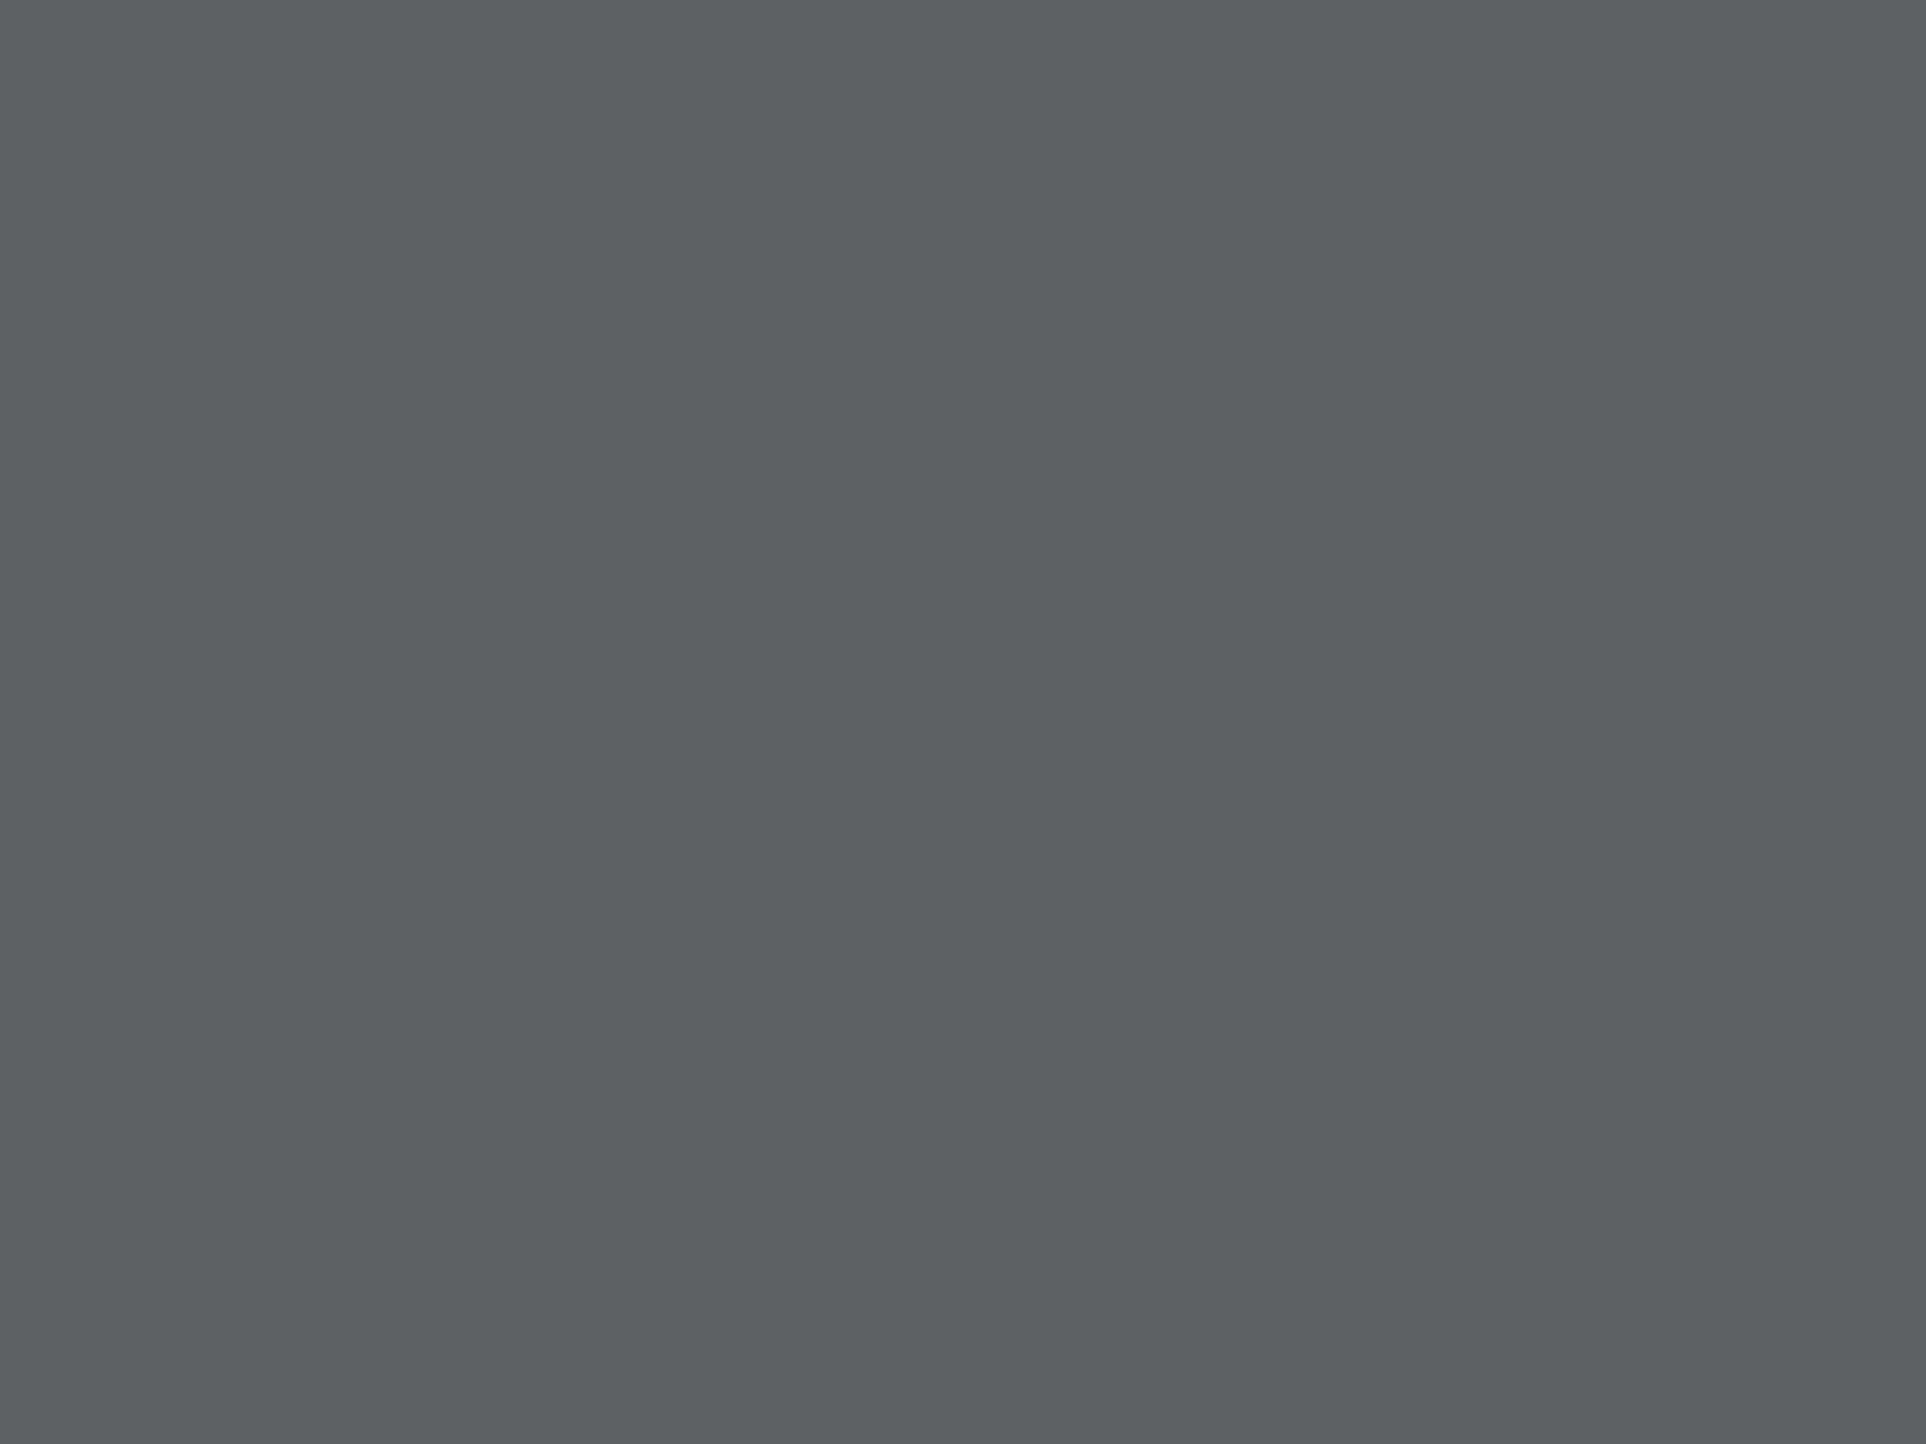 Архип Куинджи. Лодка в море. Крым. 1875. Государственный Русский музей, Санкт-Петербург